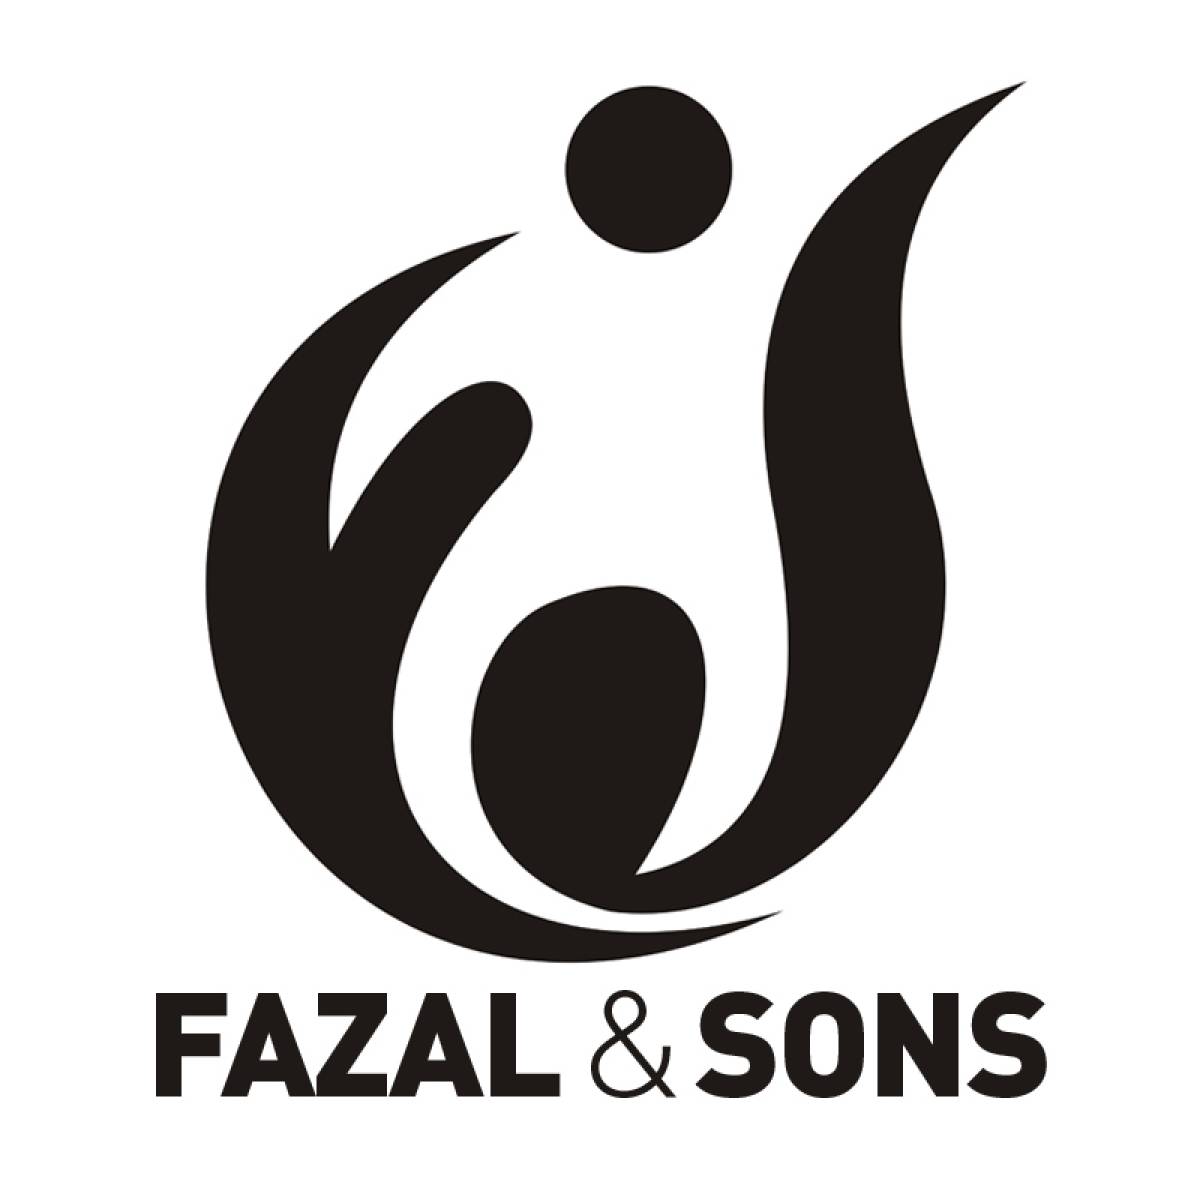 FAZAL AND SONS